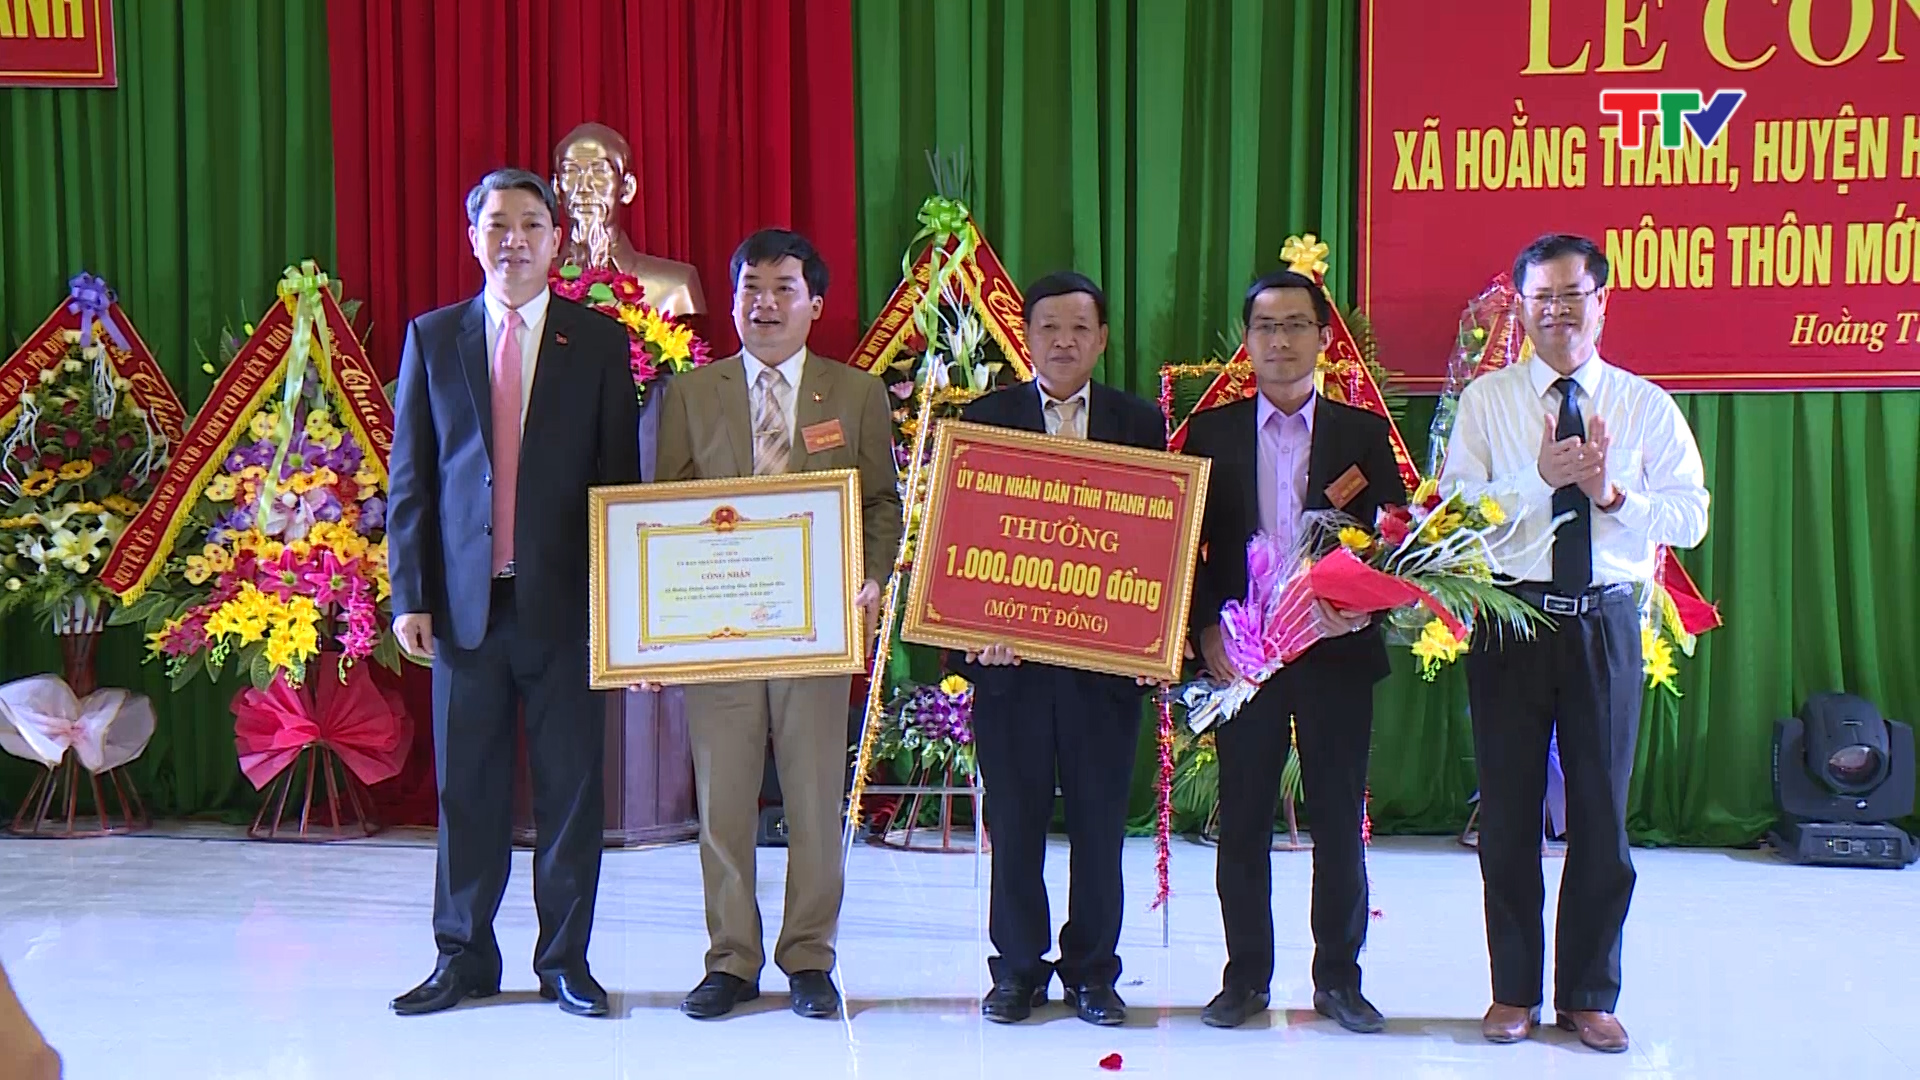  xã Hoằng Thành huyện Hoằng Hoá  đón Bằng công nhận xã đạt chuẩn Quốc gia về xây dựng nông thôn mới năm 2017 và bằng công nhận xã văn hoá